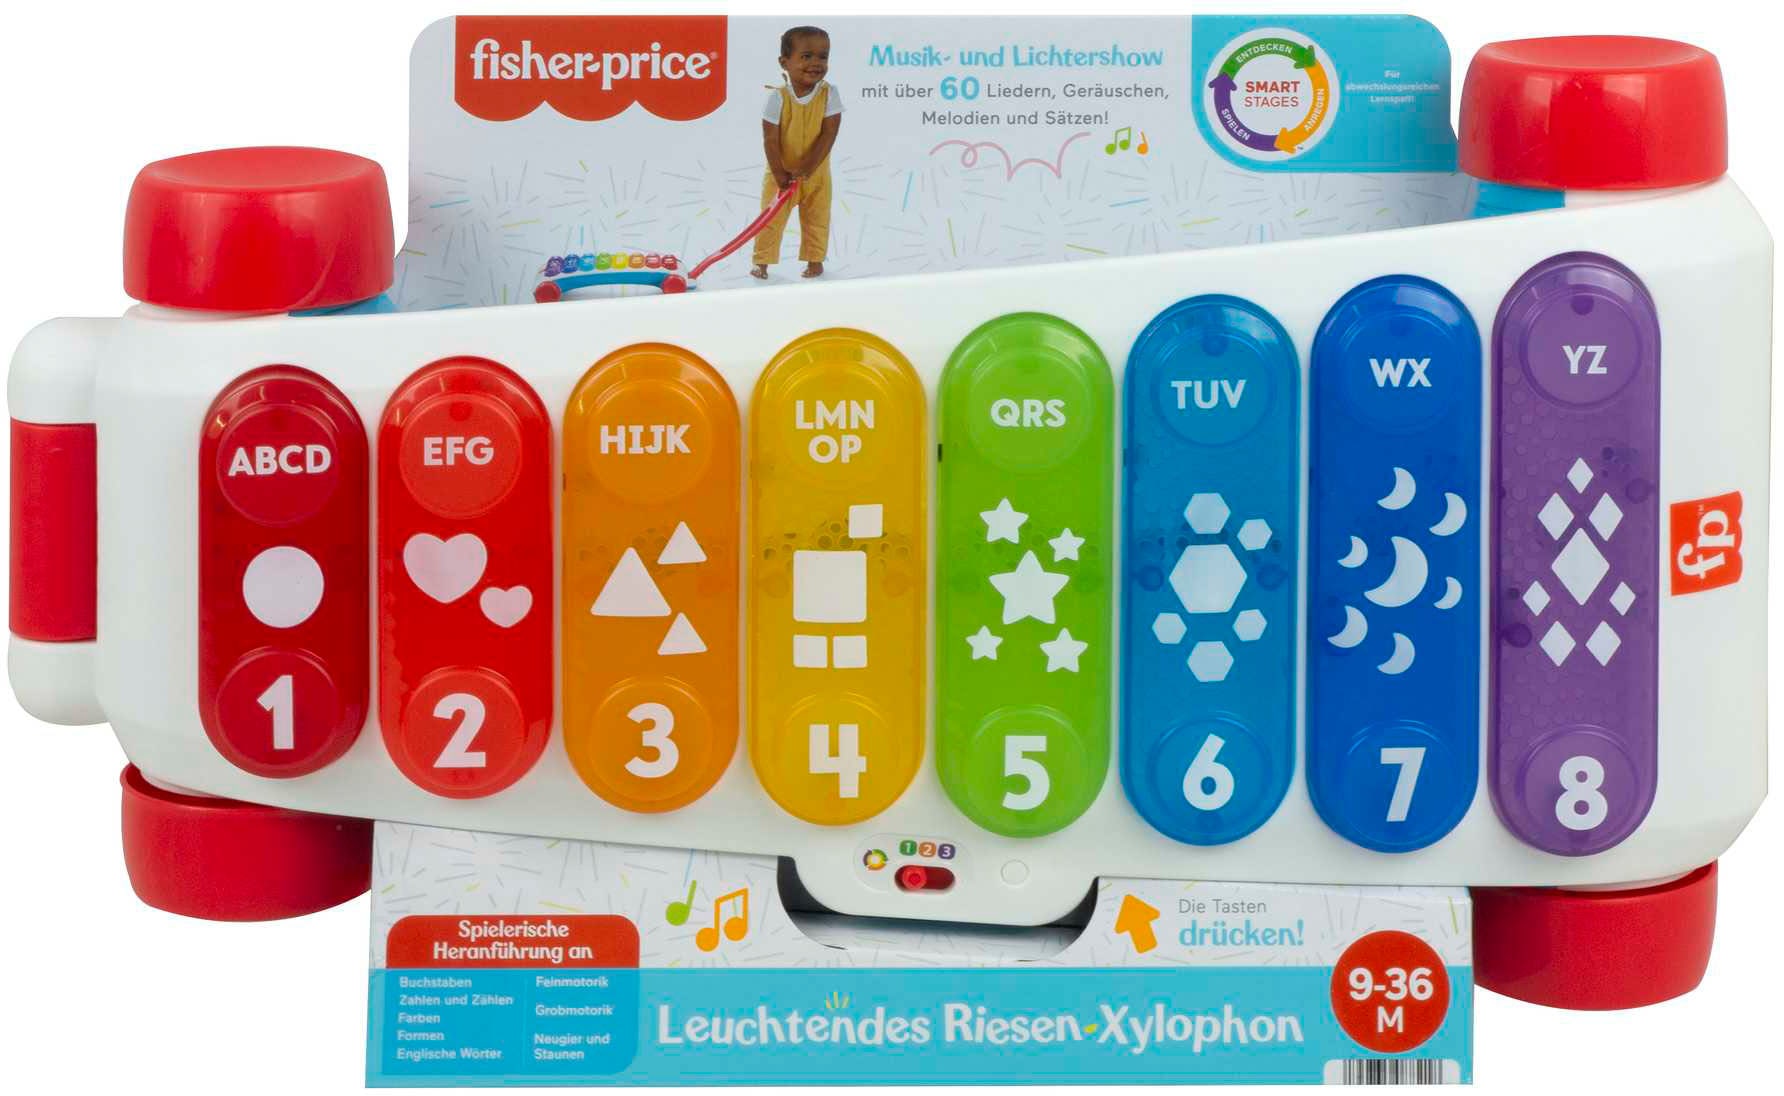 online Riesen-Xylophon« Fisher-Price® »Leuchtendes Spielzeug-Musikinstrument kaufen